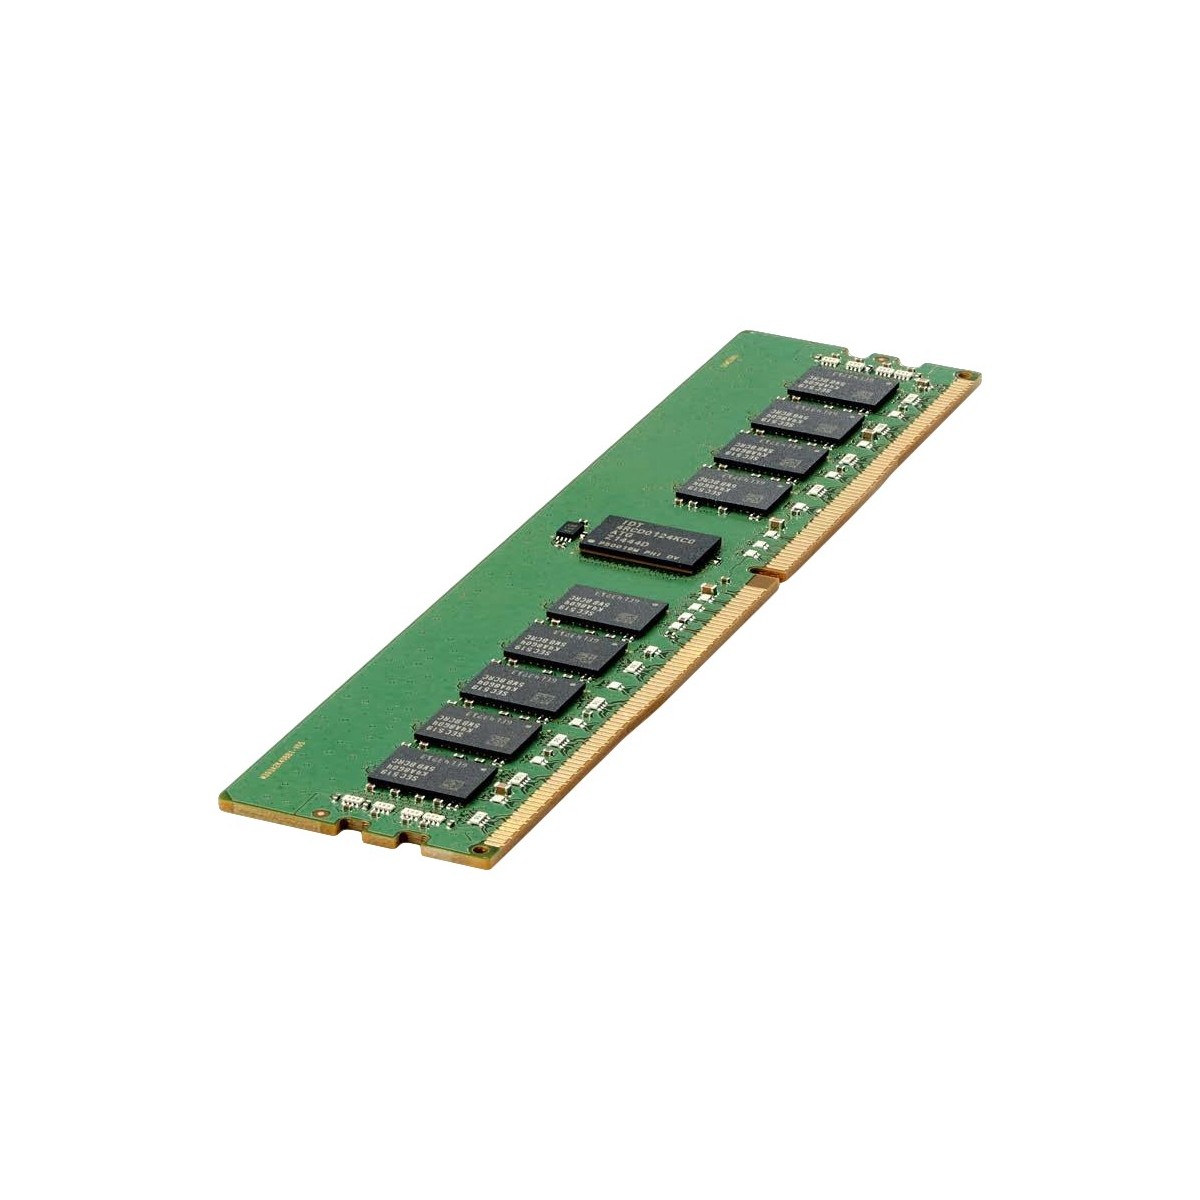 HPE 815098-B21 - 16 GB - 1 x 16 GB - DDR4 - 2666 MHz - 288-pin DIMM